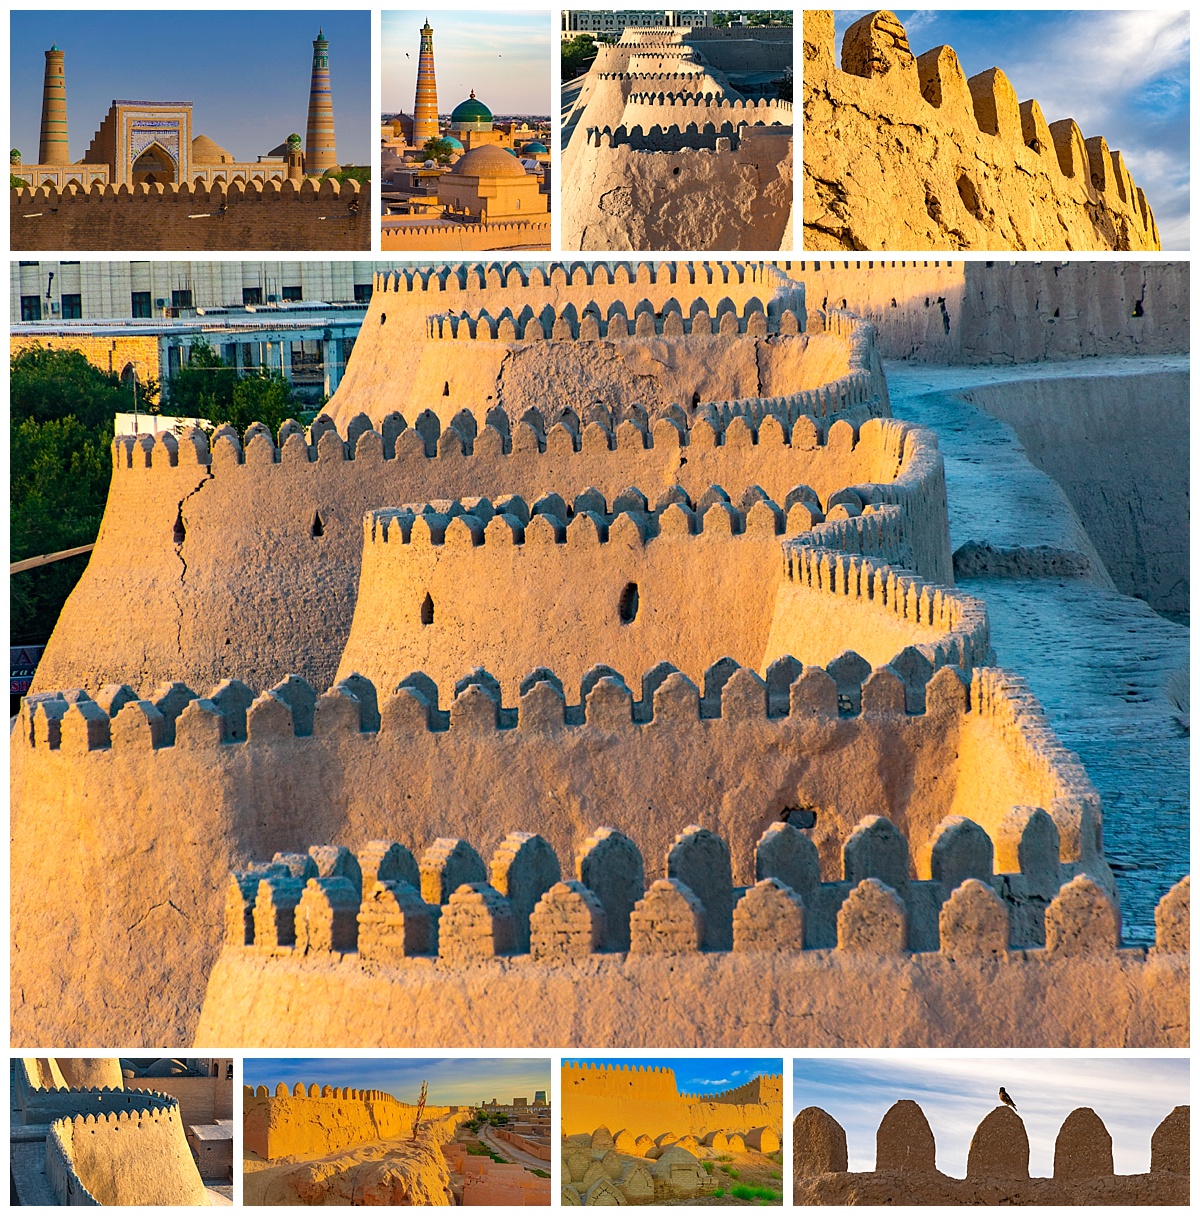 Khiva, Uzbekistan - castle walls